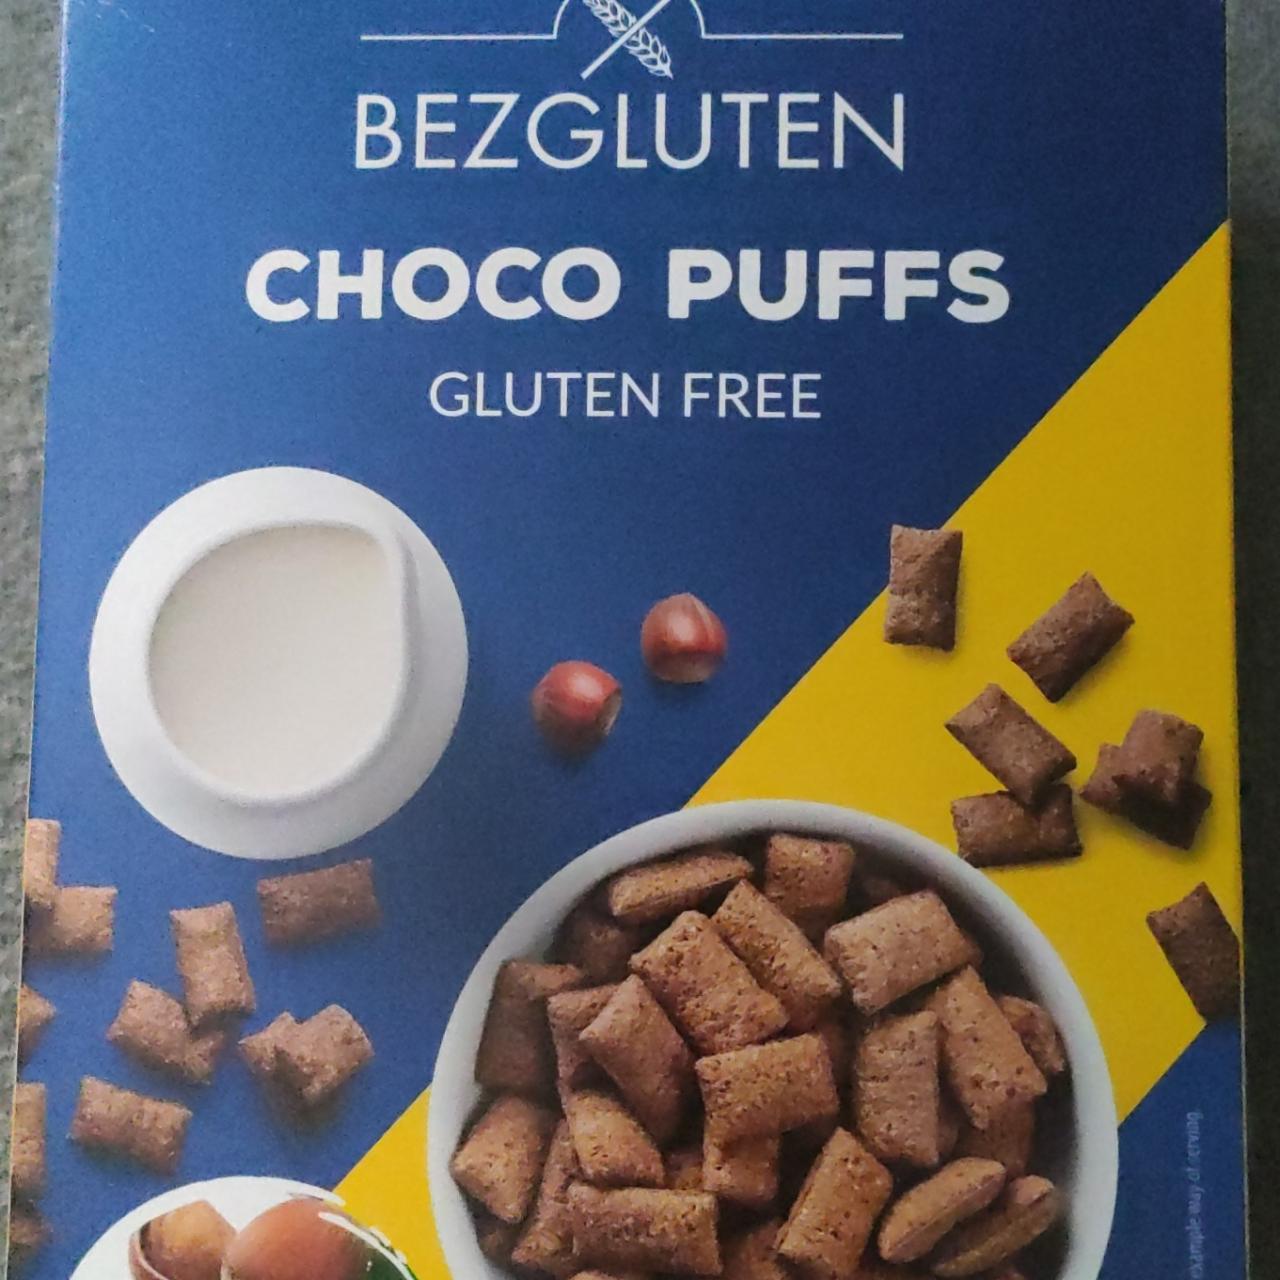 Fotografie - Choco puffs gluten free Bezgluten